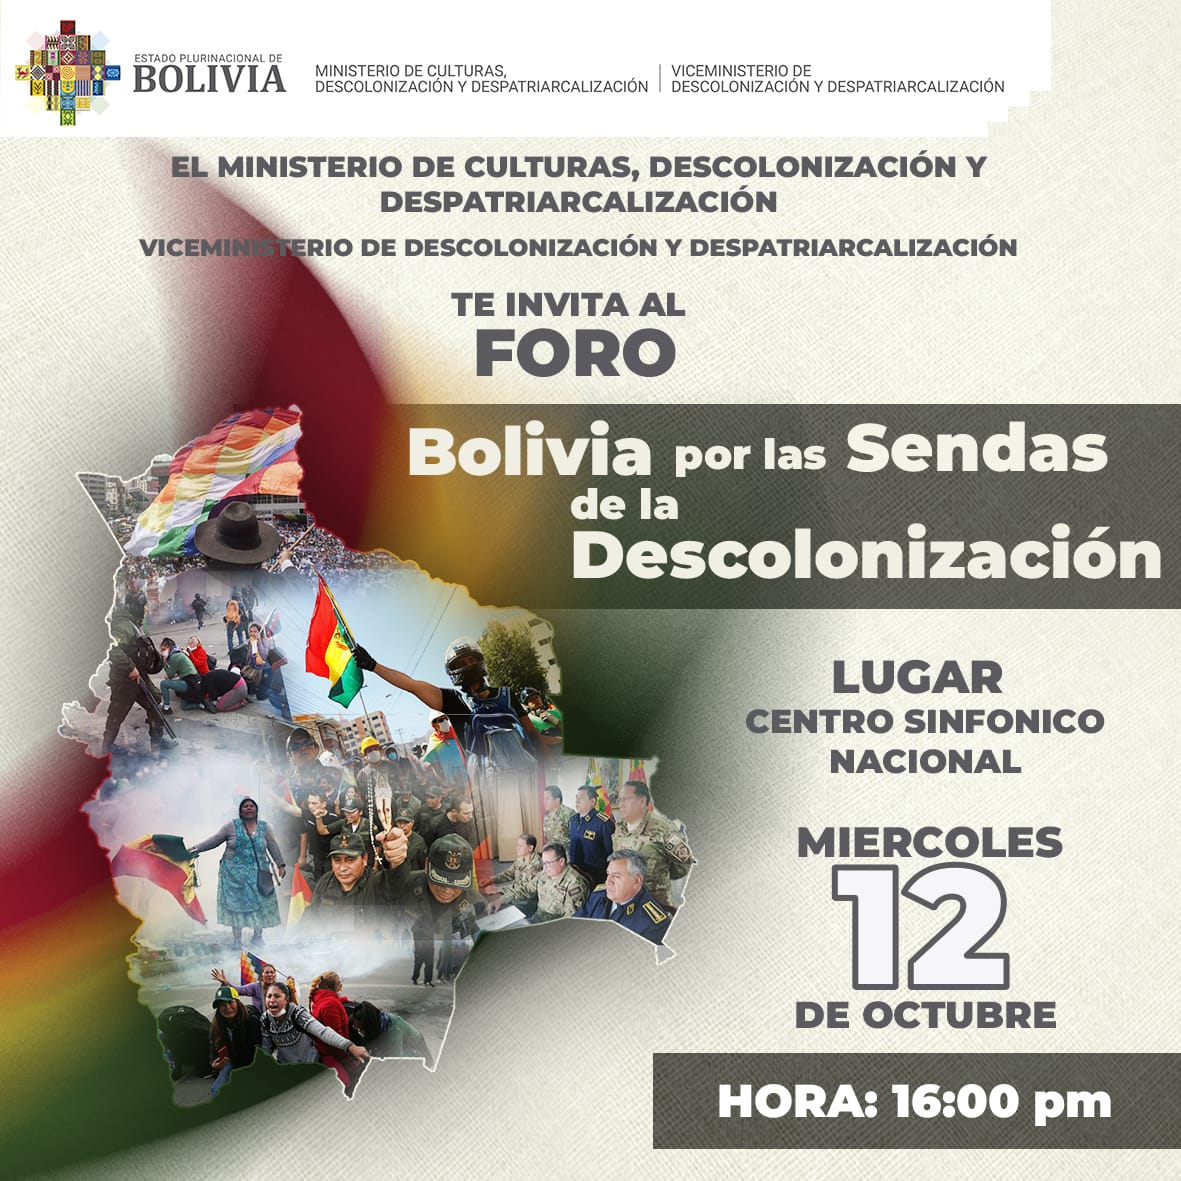 Foro “Bolivia por la Sendas de la Descolonización”, en ocasión de celebrar el día de la Descolonización